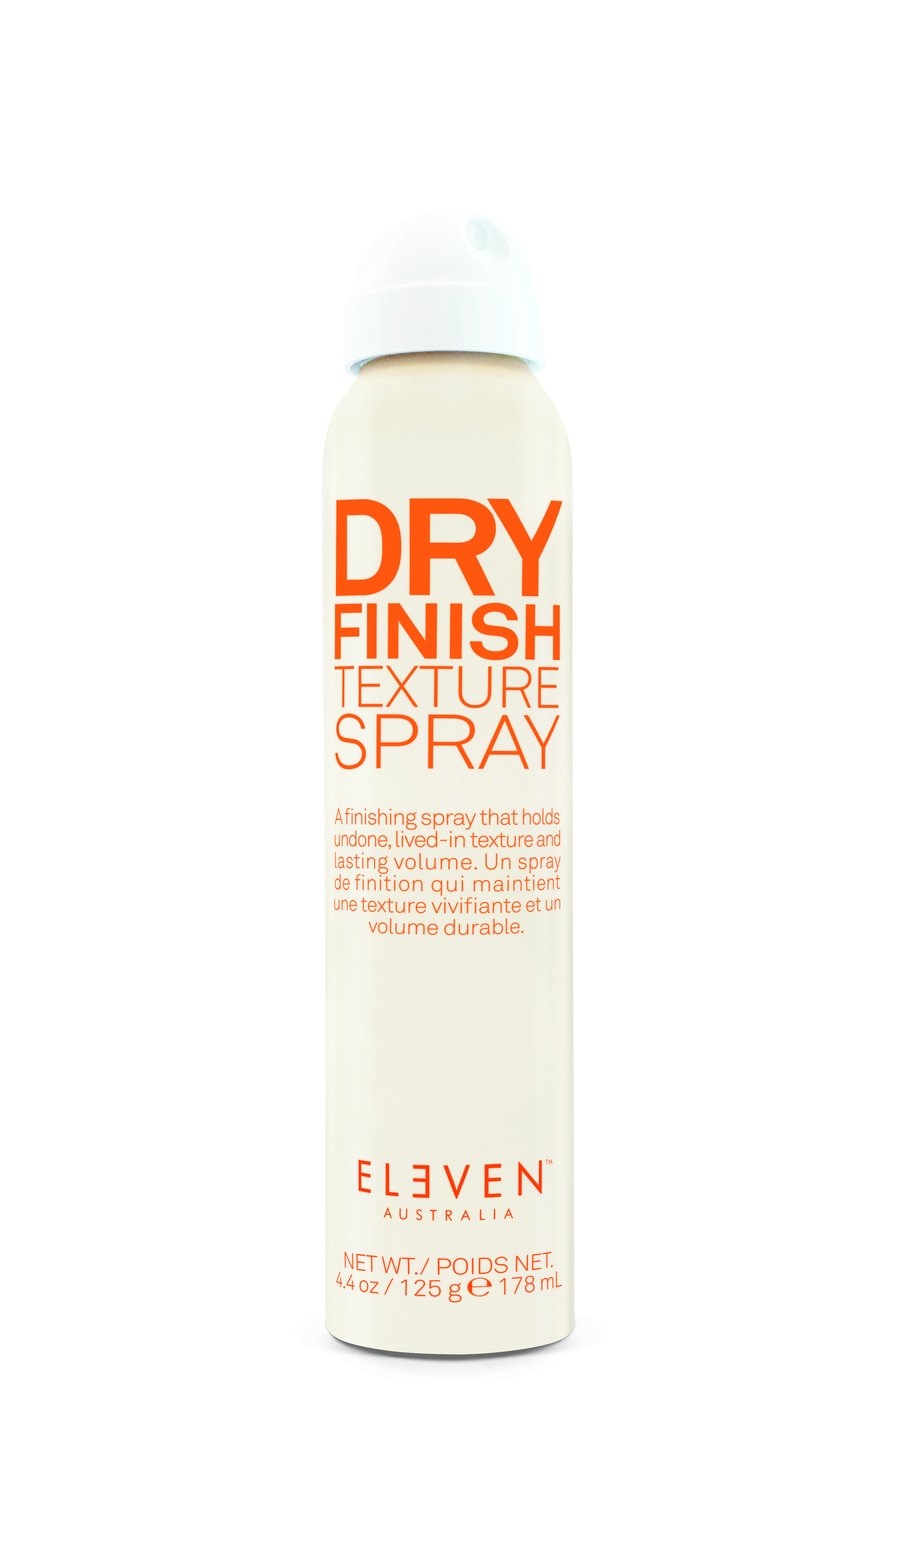 Dry finish texture spray